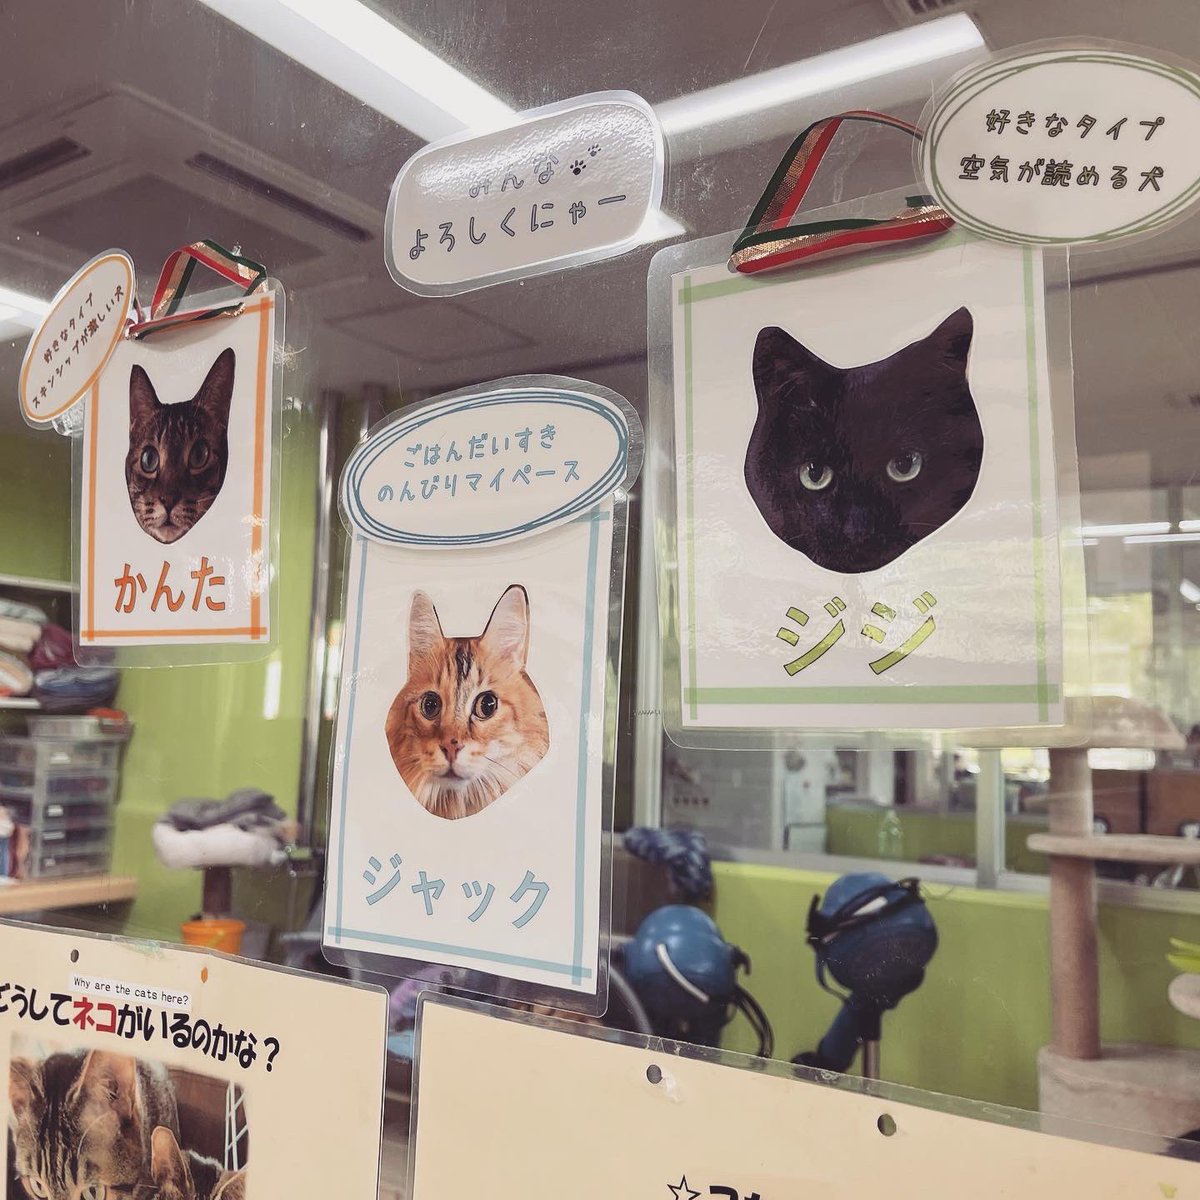 昨日は今年の名古屋デザイナー学院の介助犬ブースを担当する学生さんたちと長久手市にある介助犬訓練施設シンシアの丘の見学会に行ってきました！

#名古屋デザイナー学院漫画学科 
#日本介助犬協会
#介助犬